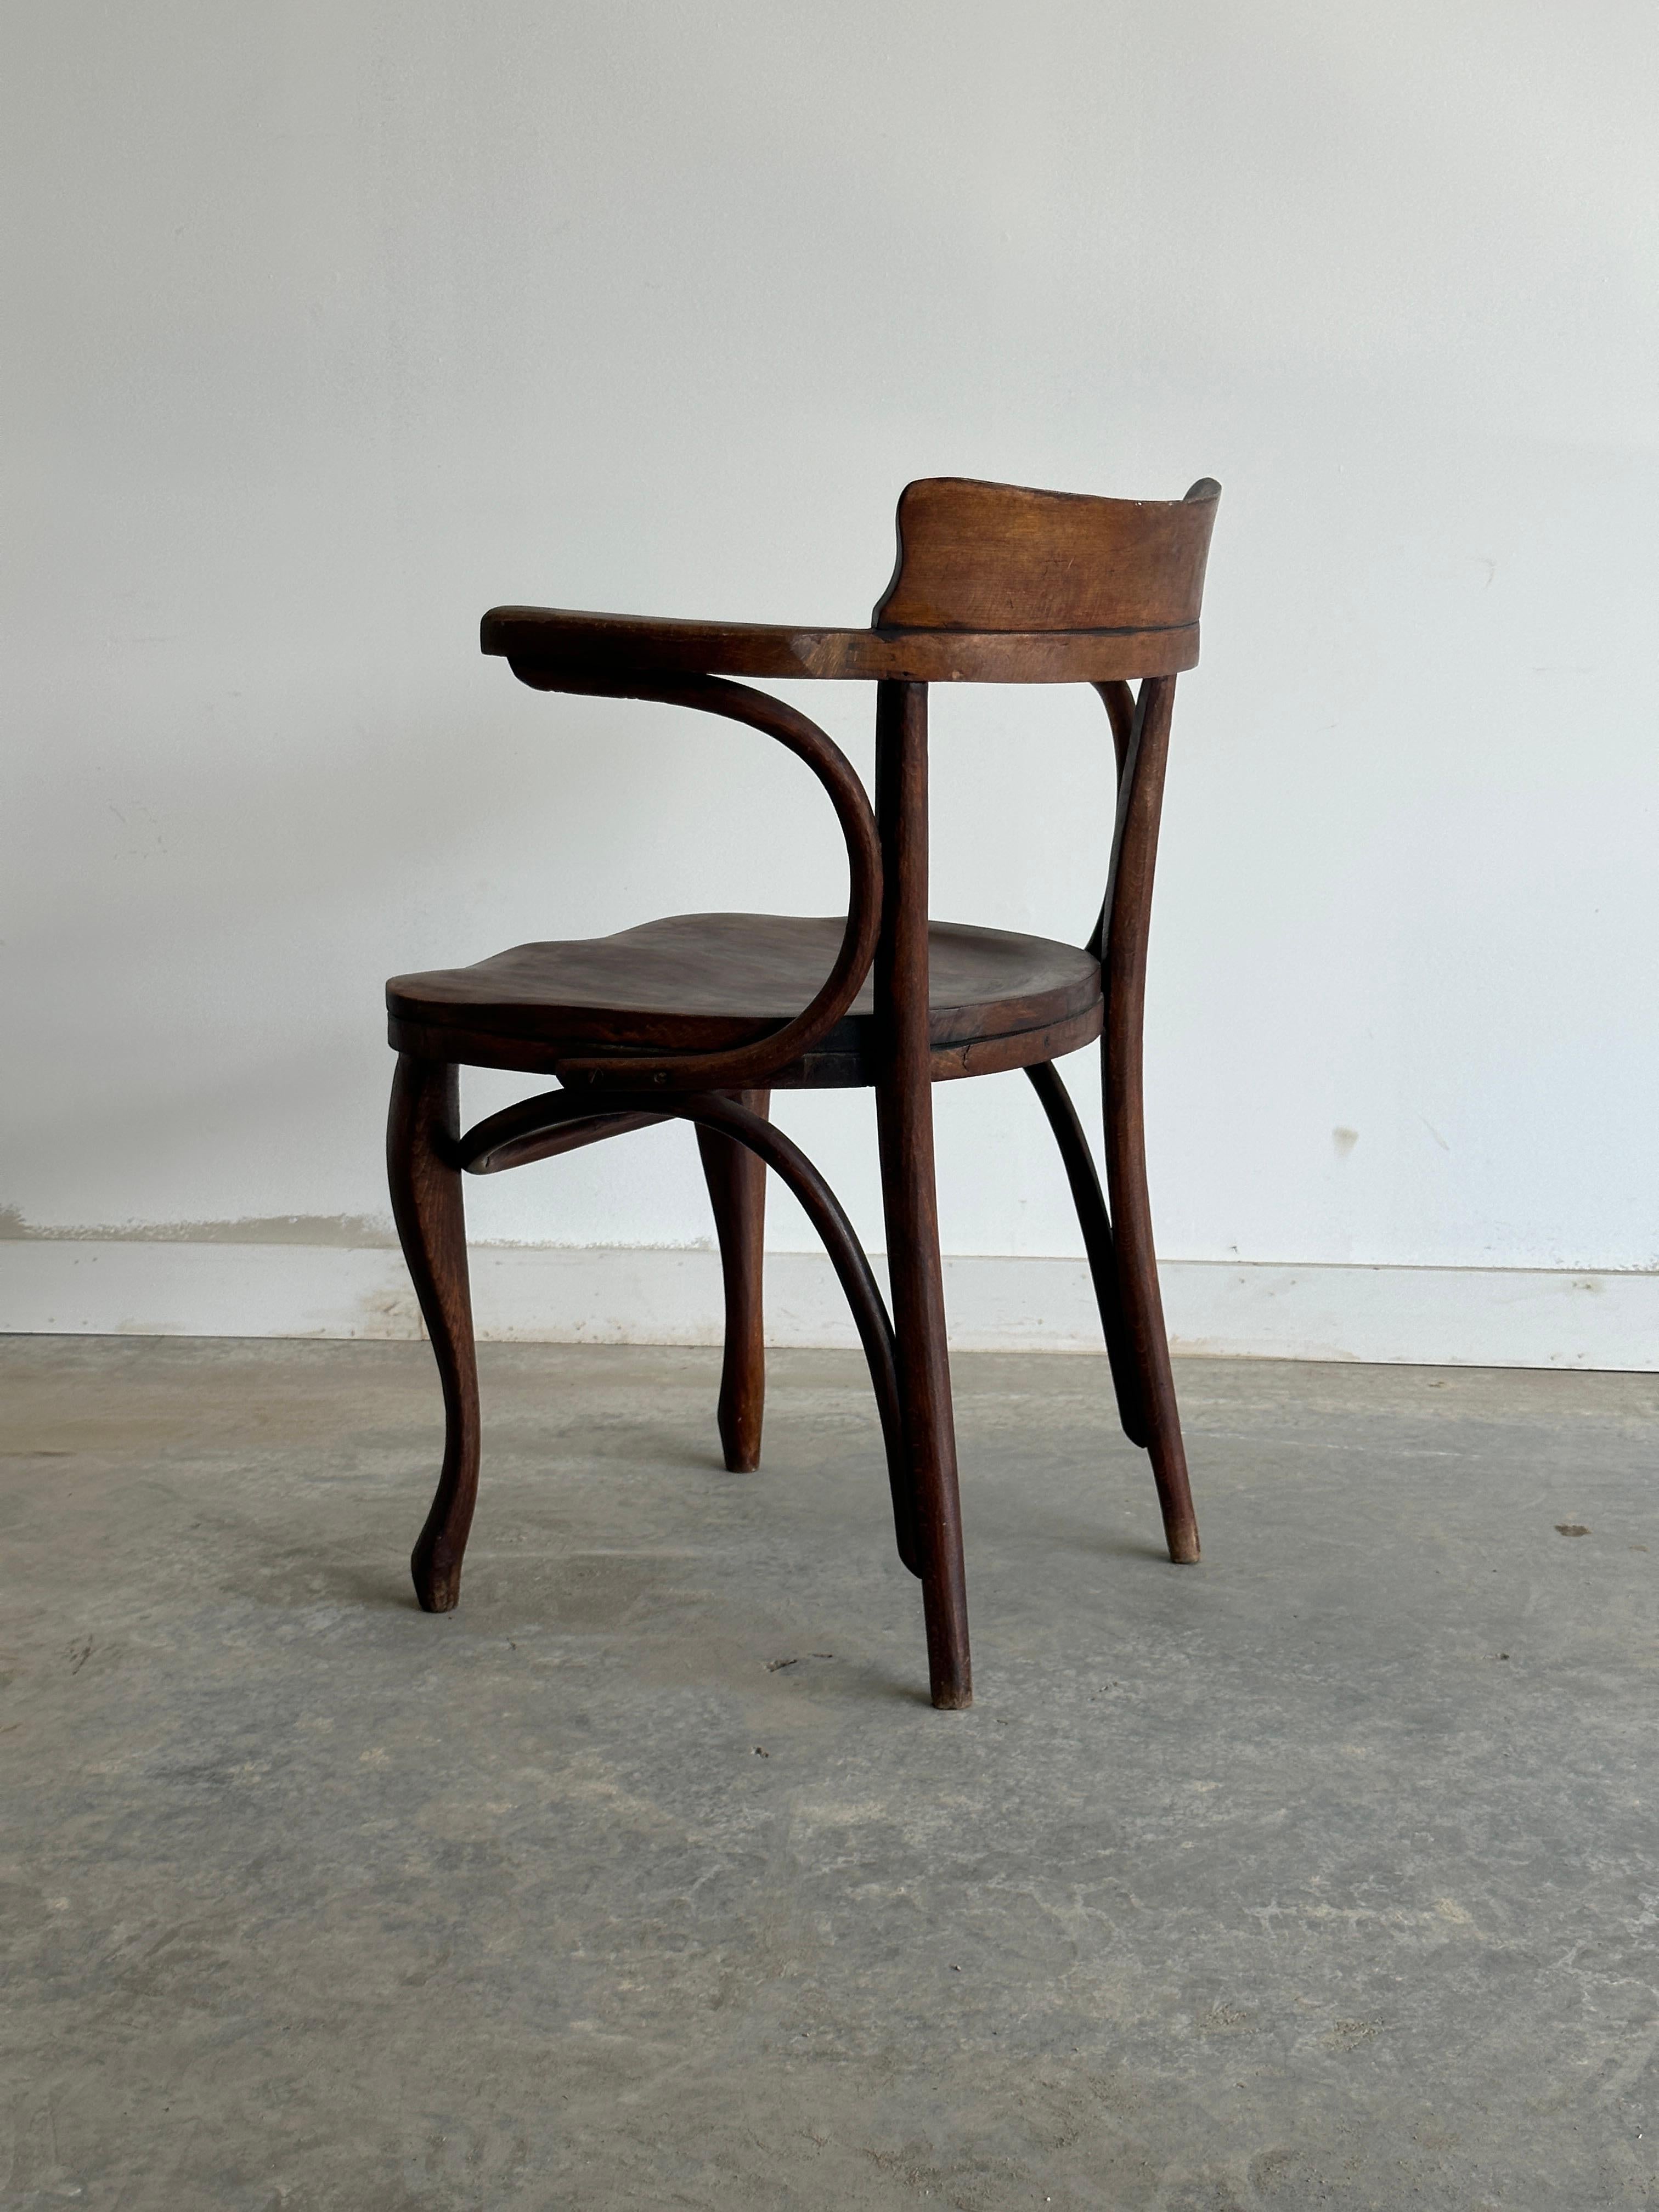 La chaise de bureau Secession n° 6150 est un meuble classique conçu par l'influent architecte et designer autrichien Adolf Loos au début du XXe siècle. Il a été réalisé par Thonet, un fabricant renommé de meubles en bois courbé. La chaise présente